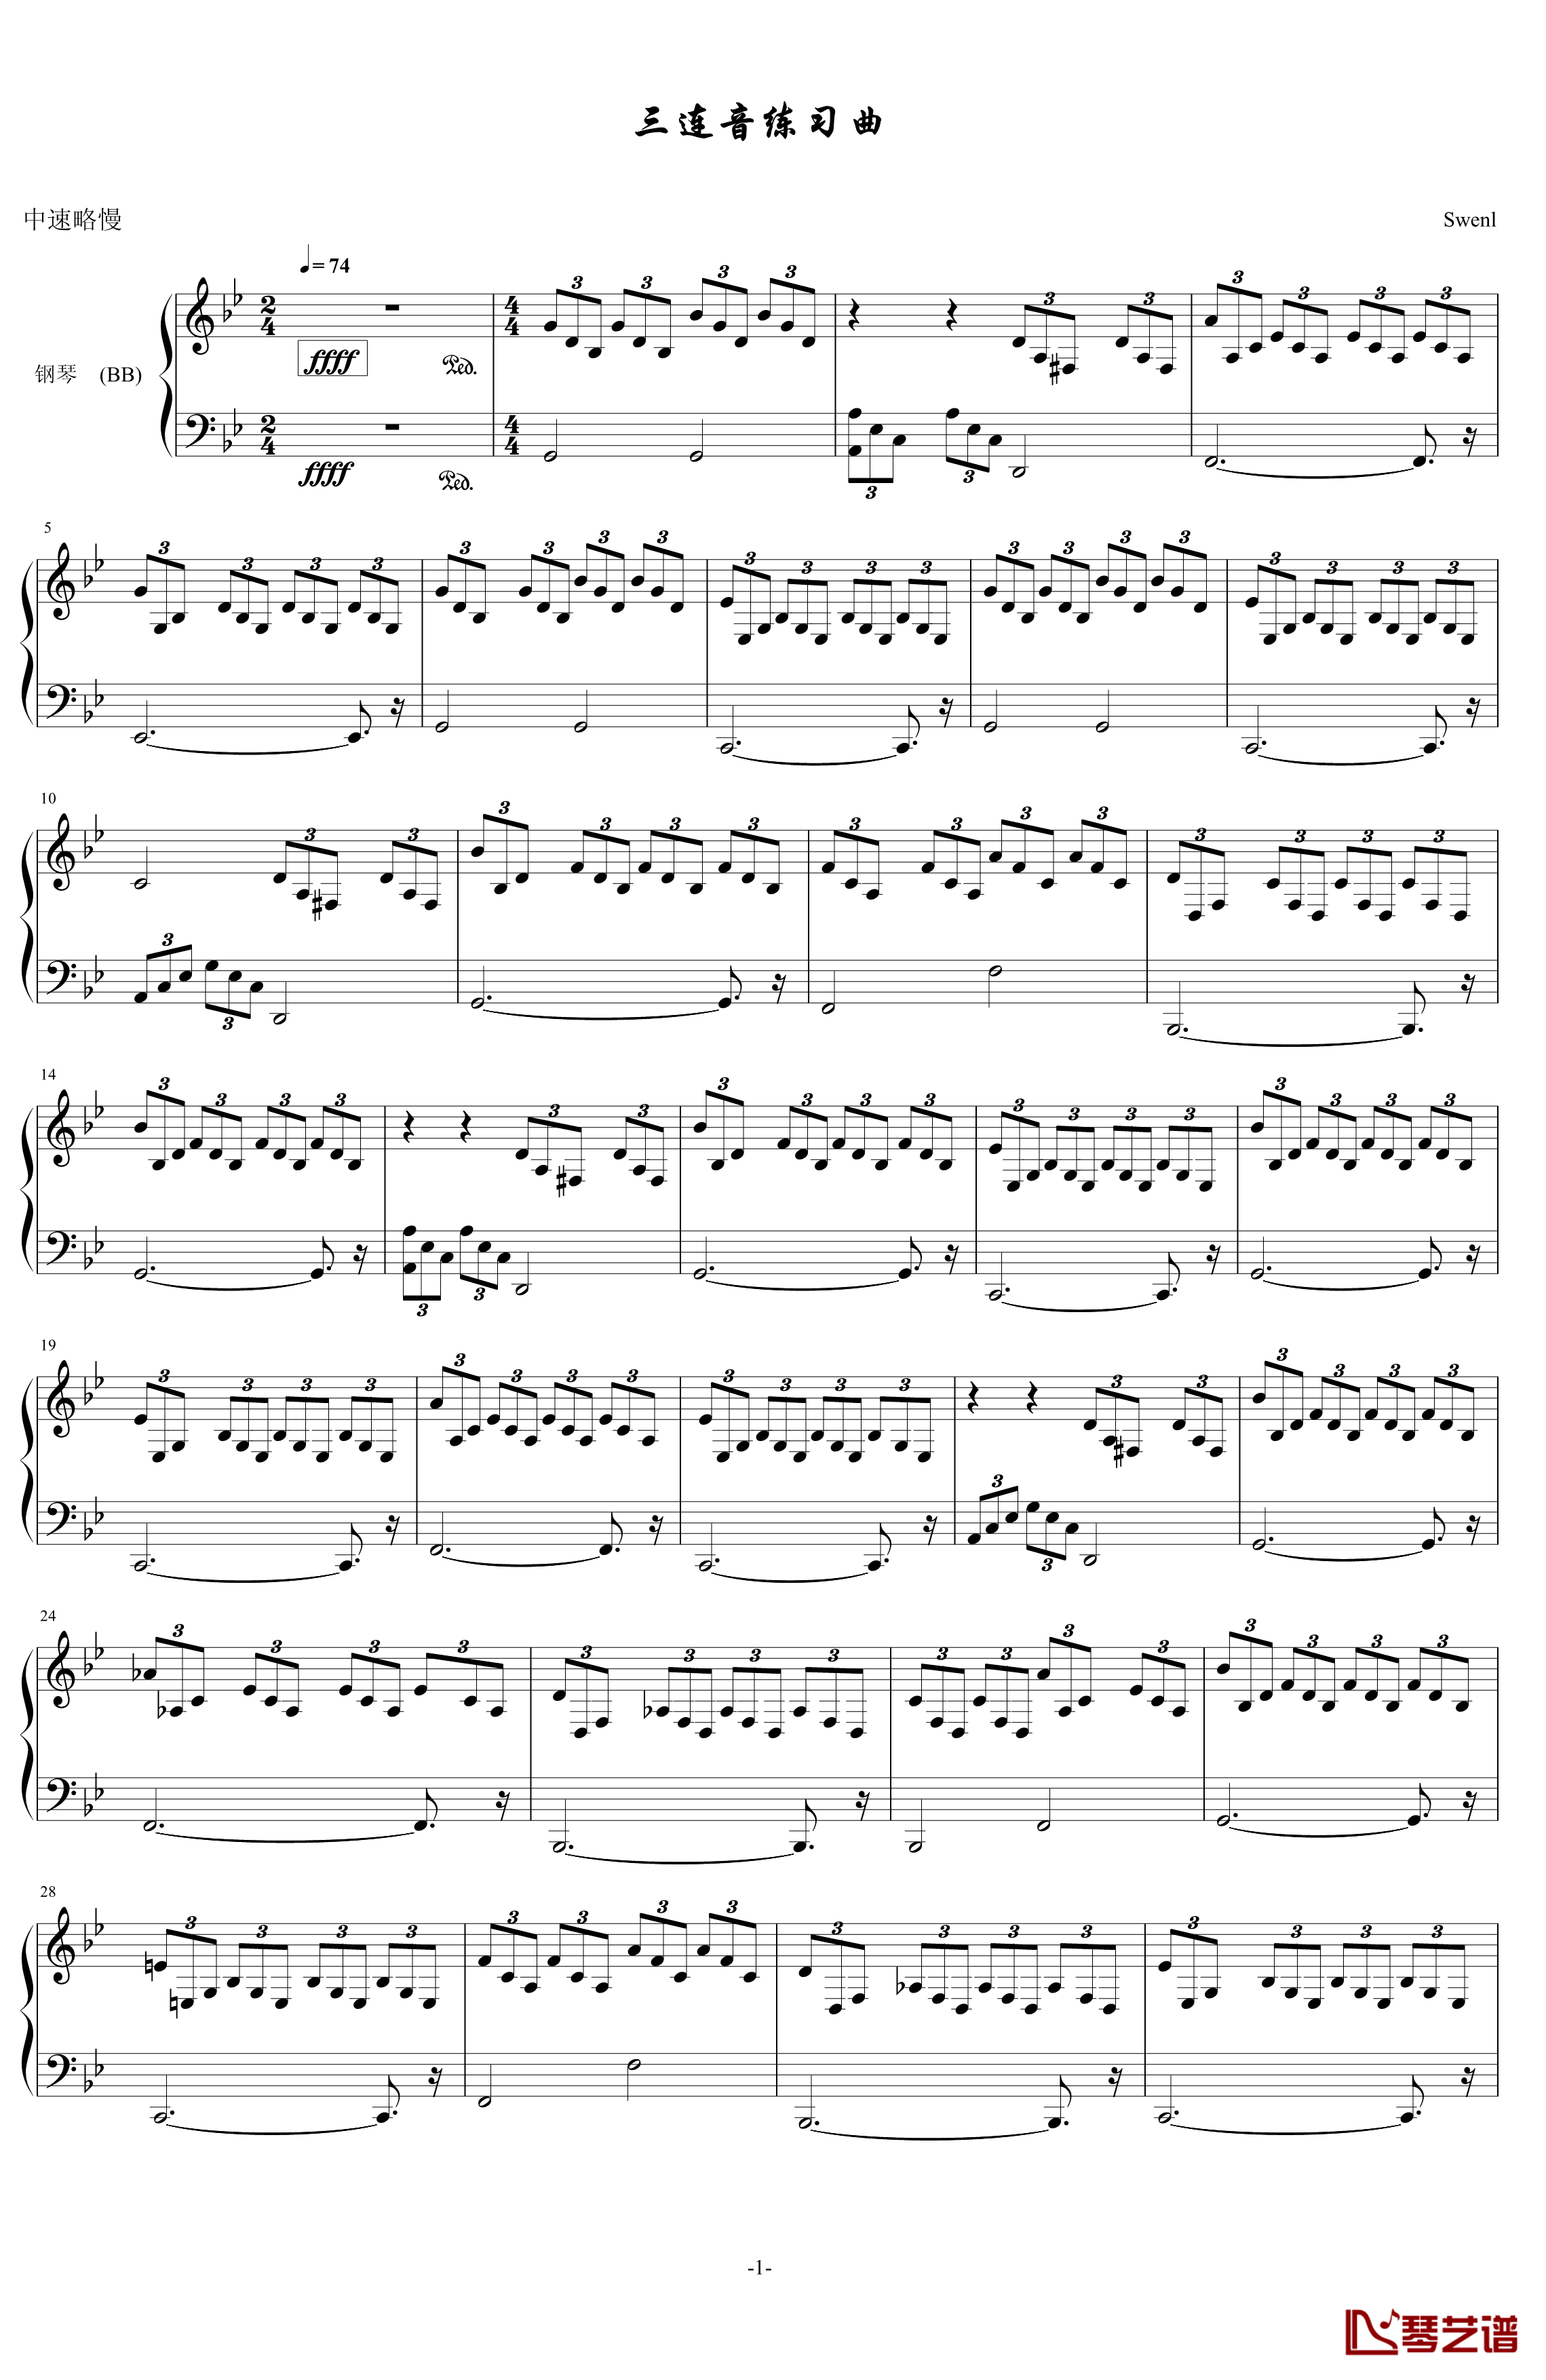 三连音练习曲钢琴谱-初学者简单版-swenl1